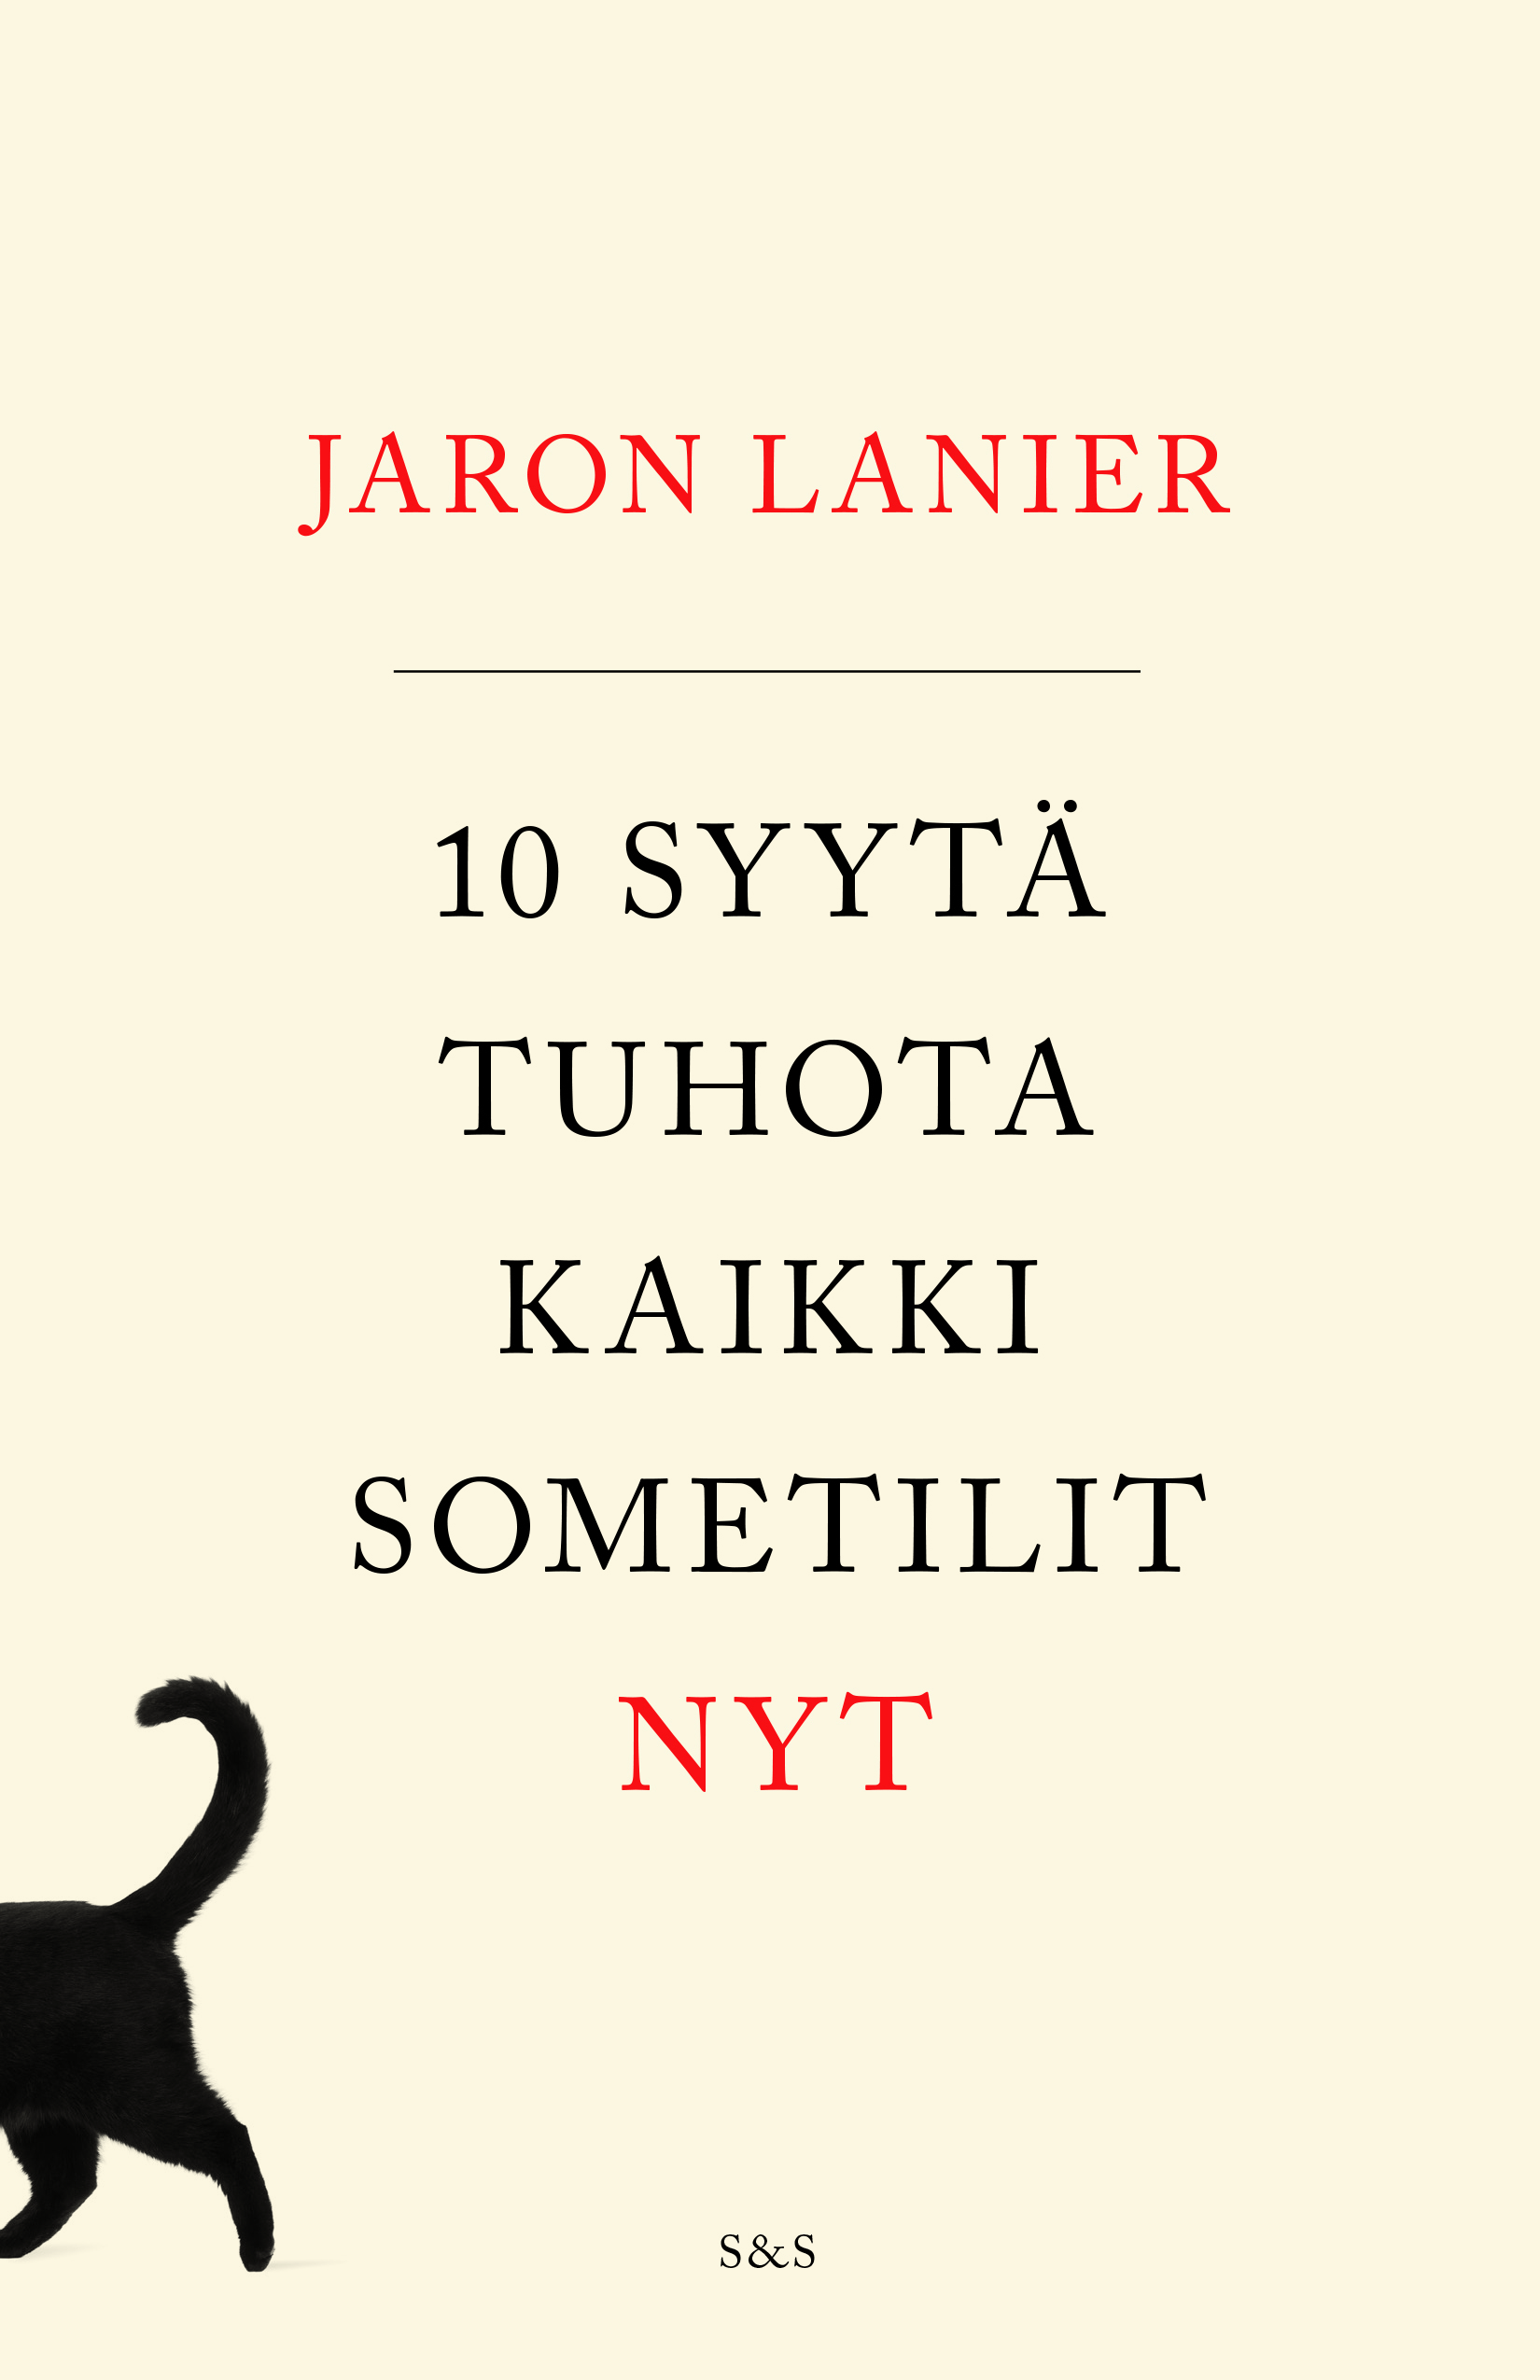 Jaron Lanier, Kirsimarja Tielinen: 10 syytä tuhota kaikki sometilit nyt (Hardcover, suomi language, 2019, S&S)